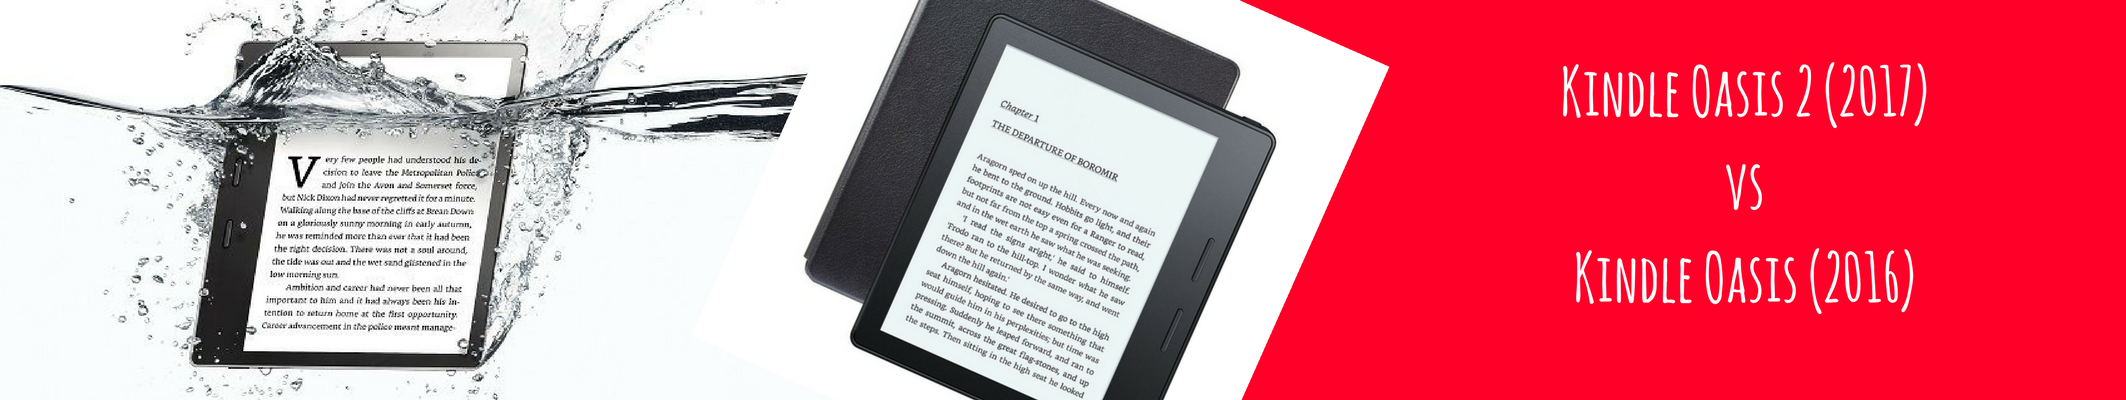 Kindle Oasis 2 lepiej sprzedaje się od Kindle Oasis pierwszej generacji